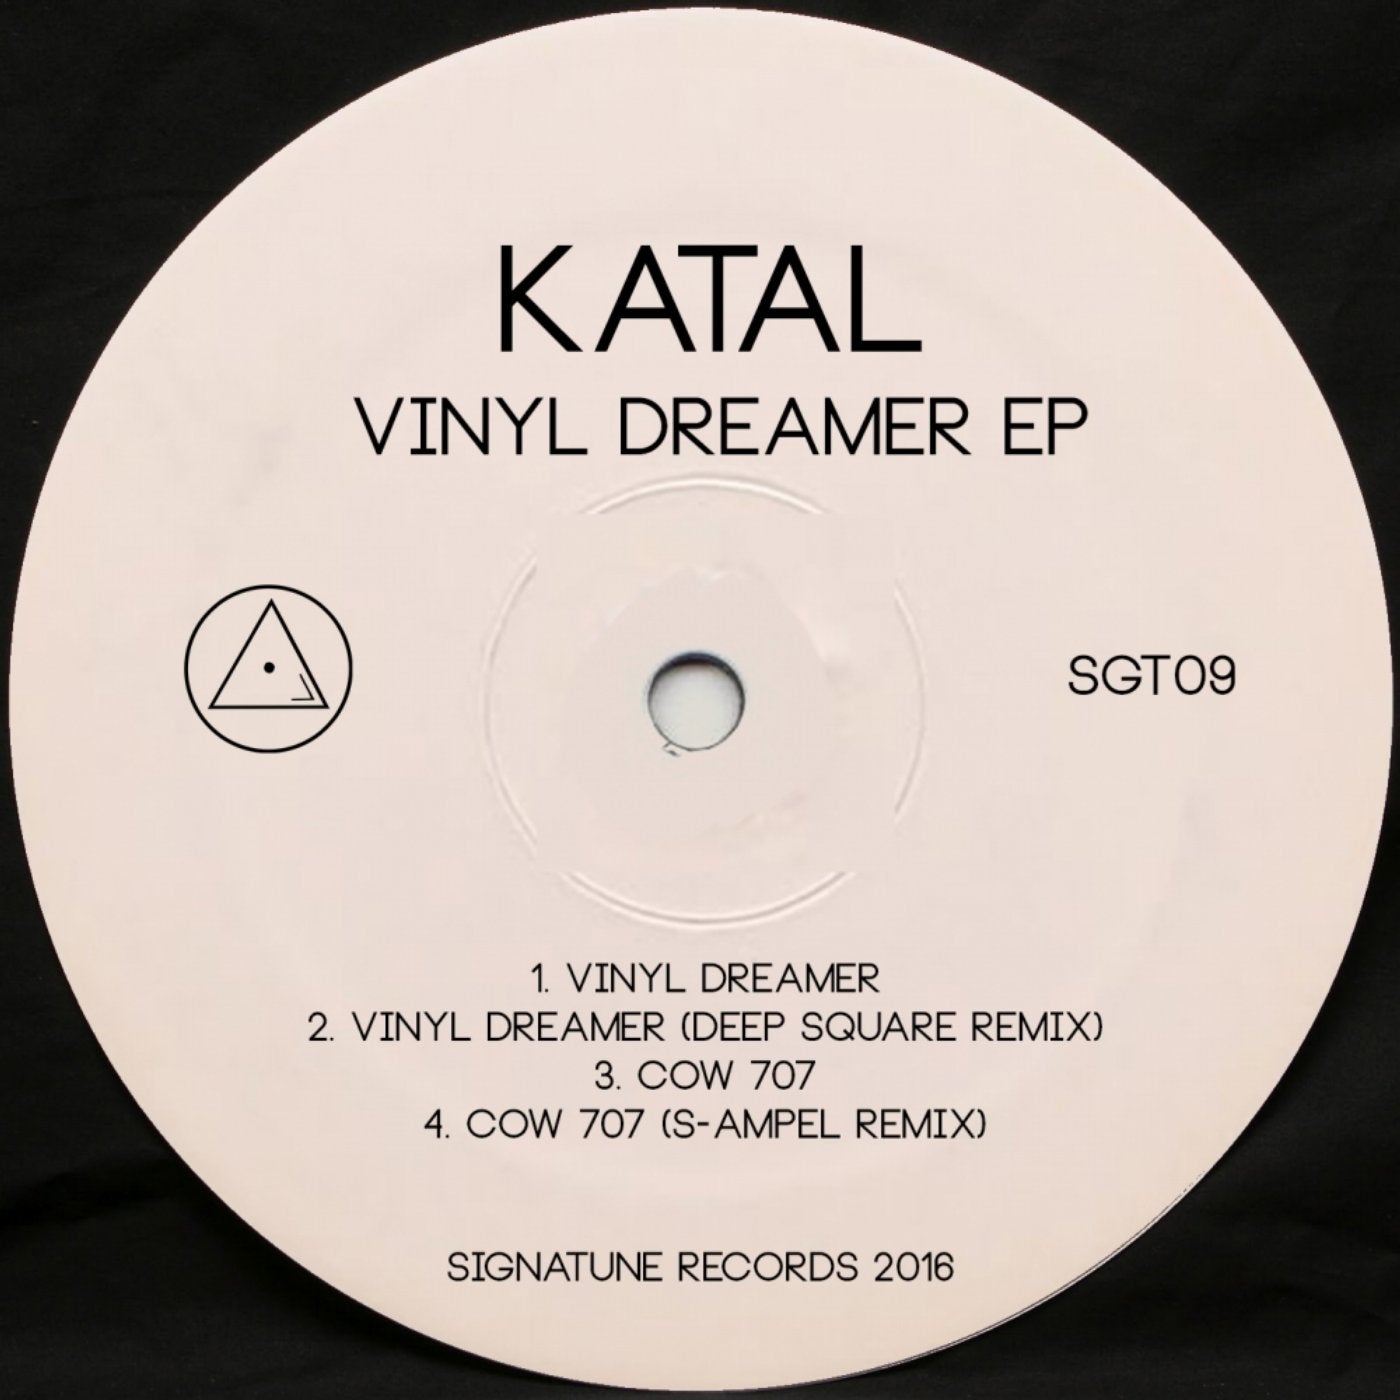 Vinyl Dreamer